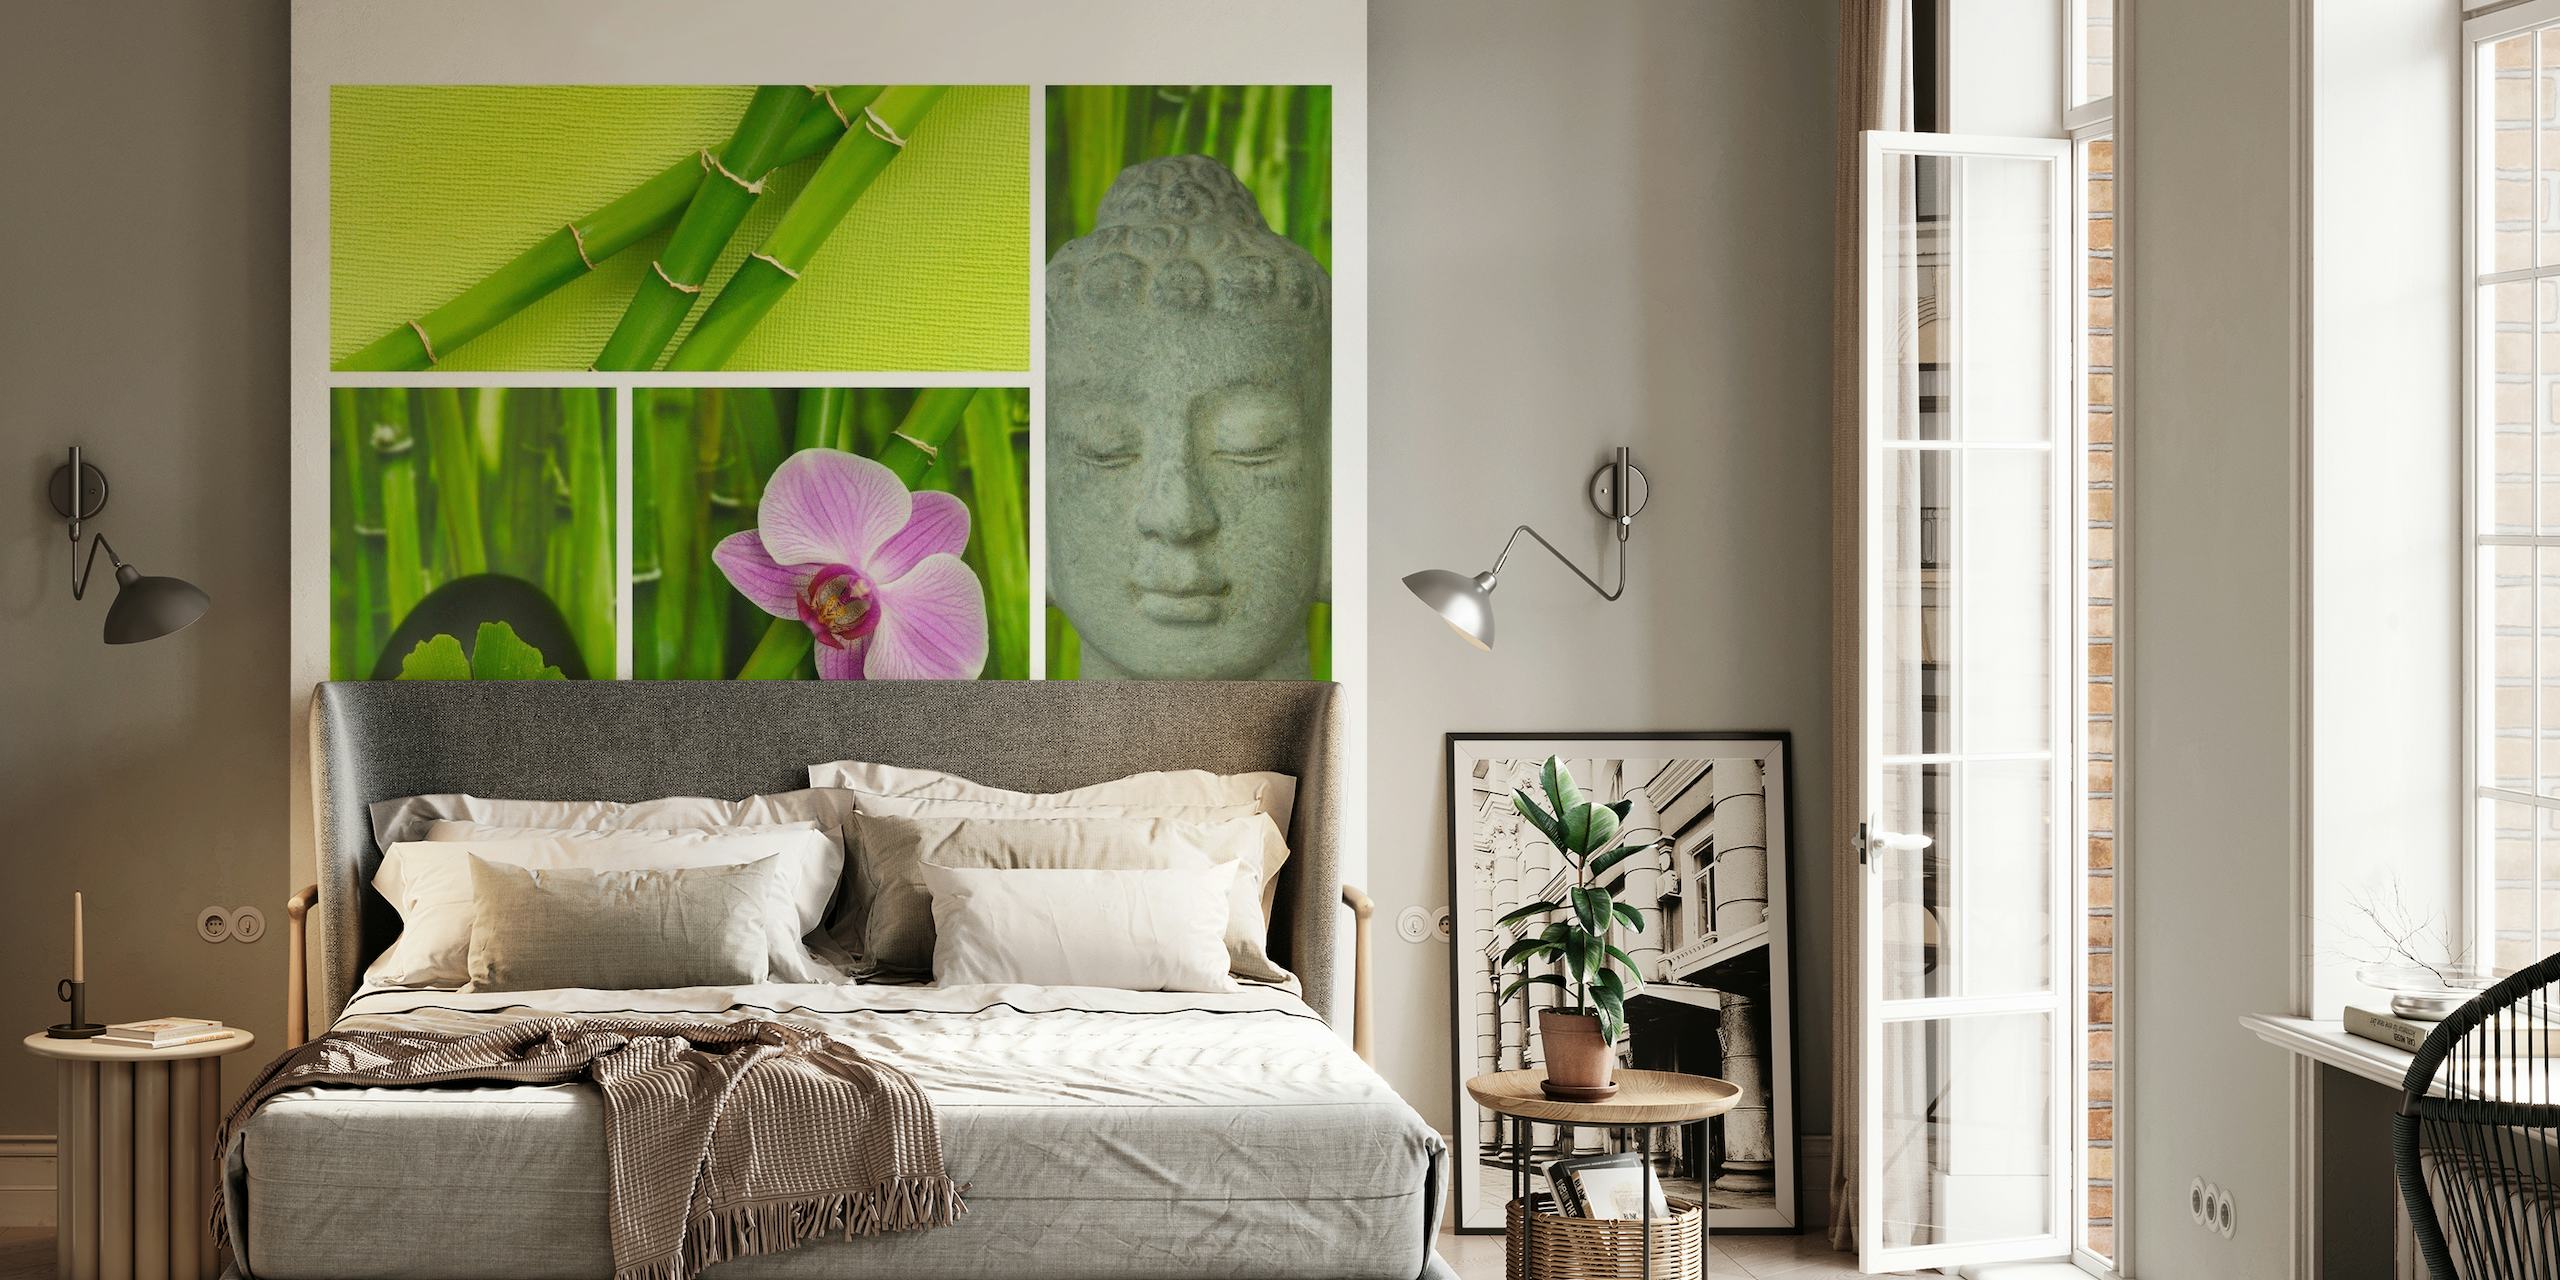 Mural de parede Relax Zen e Buda com bambu, orquídea, rosto de Buda e texto 'Relaxe'